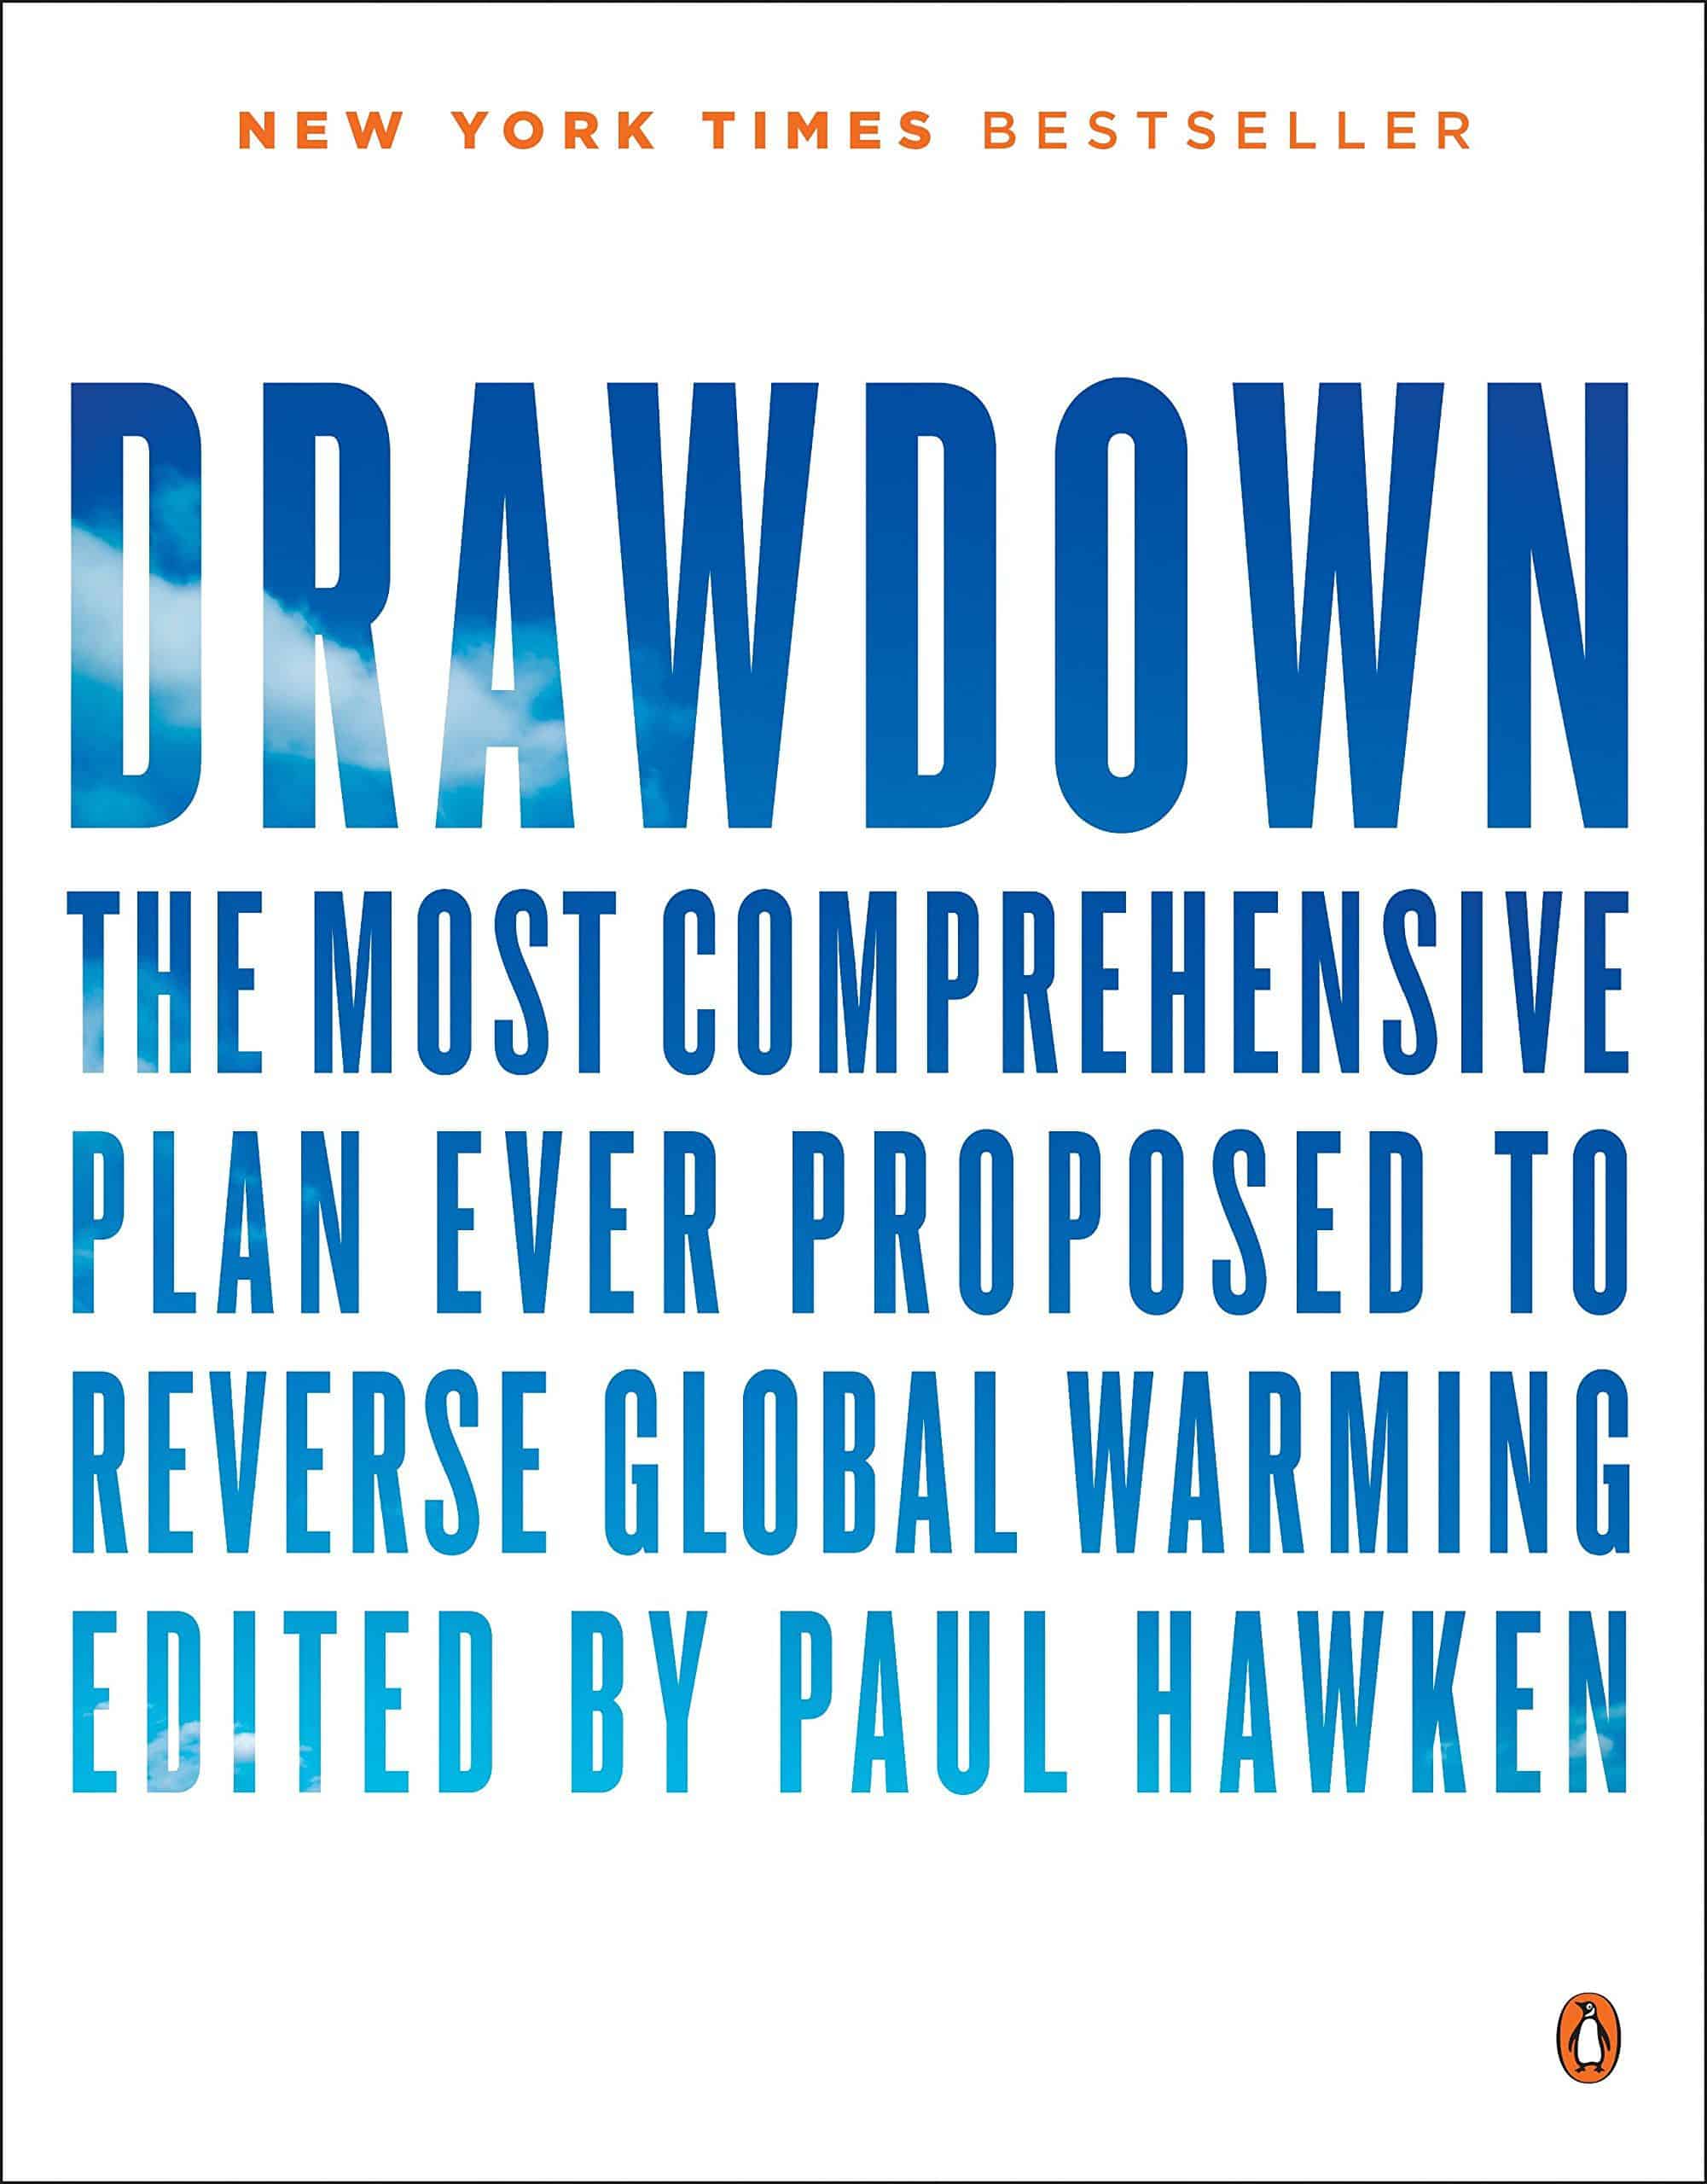 जलवायु परिवर्तन के बारे में जानने के लिए 10 ग्लोबल वार्मिंग पुस्तकें - ड्रॉडाउन - पॉल हॉकेन